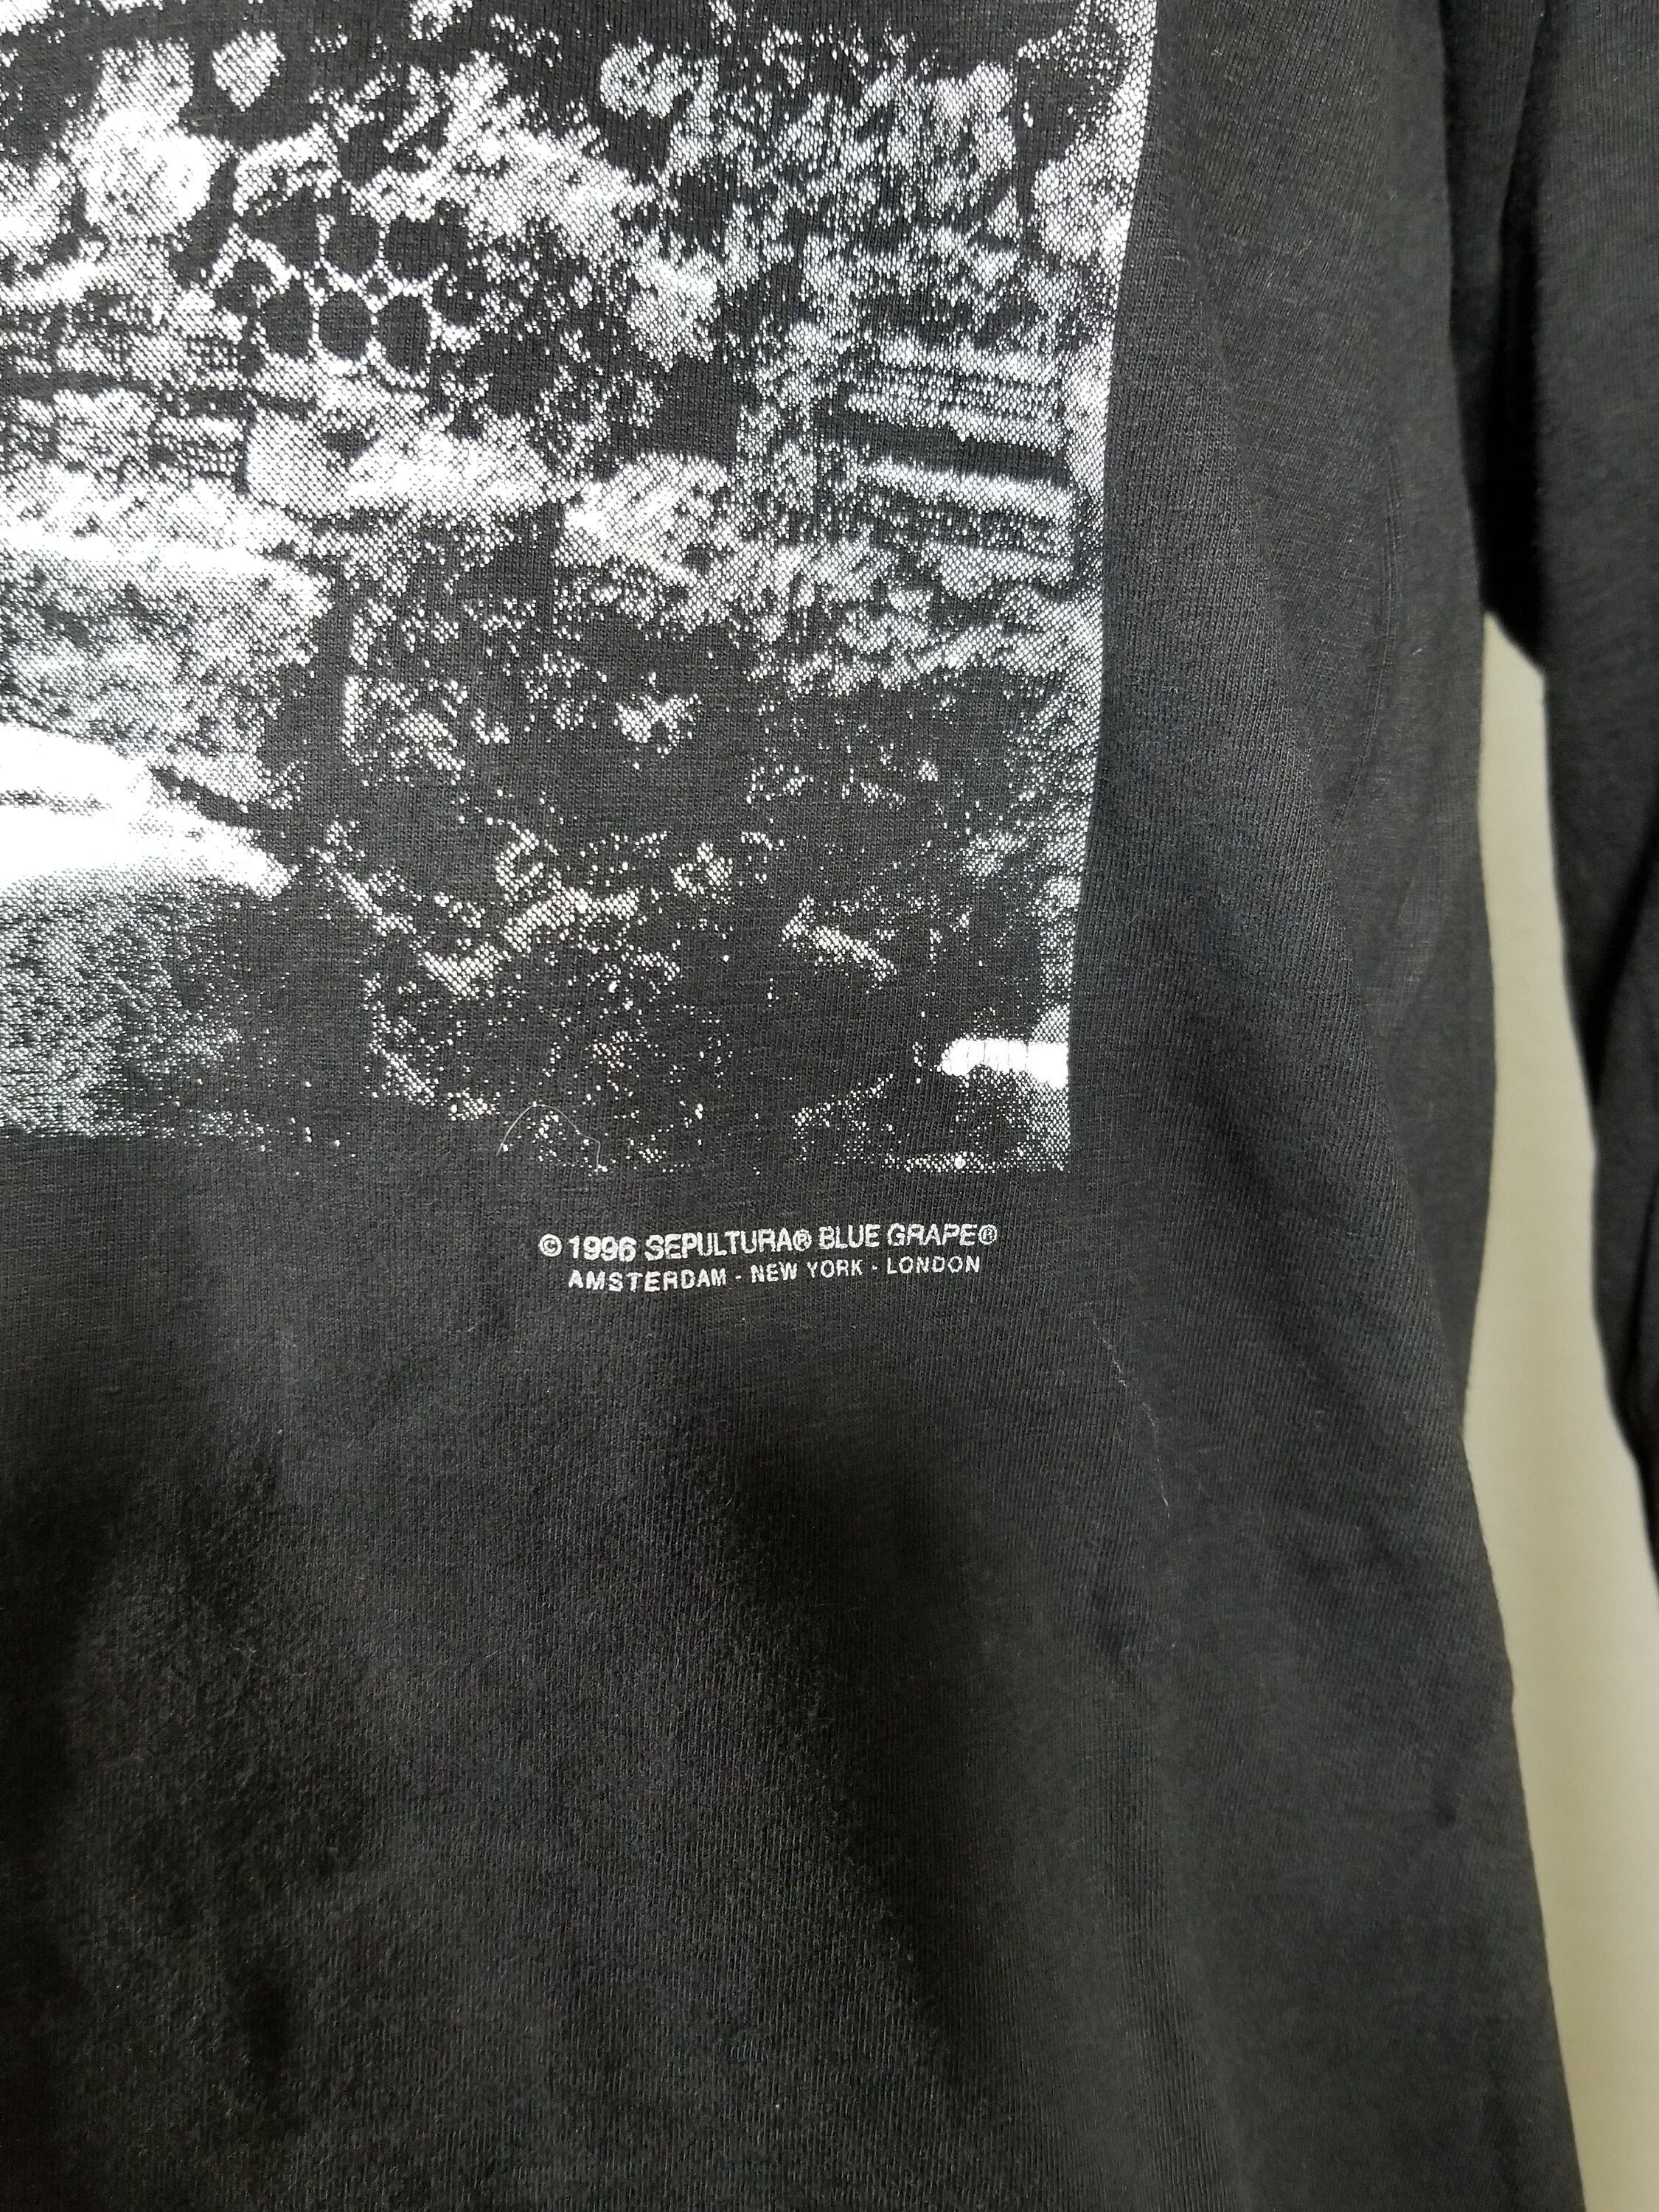 sepultura 96’ツアー ヴィンテージTシャツ